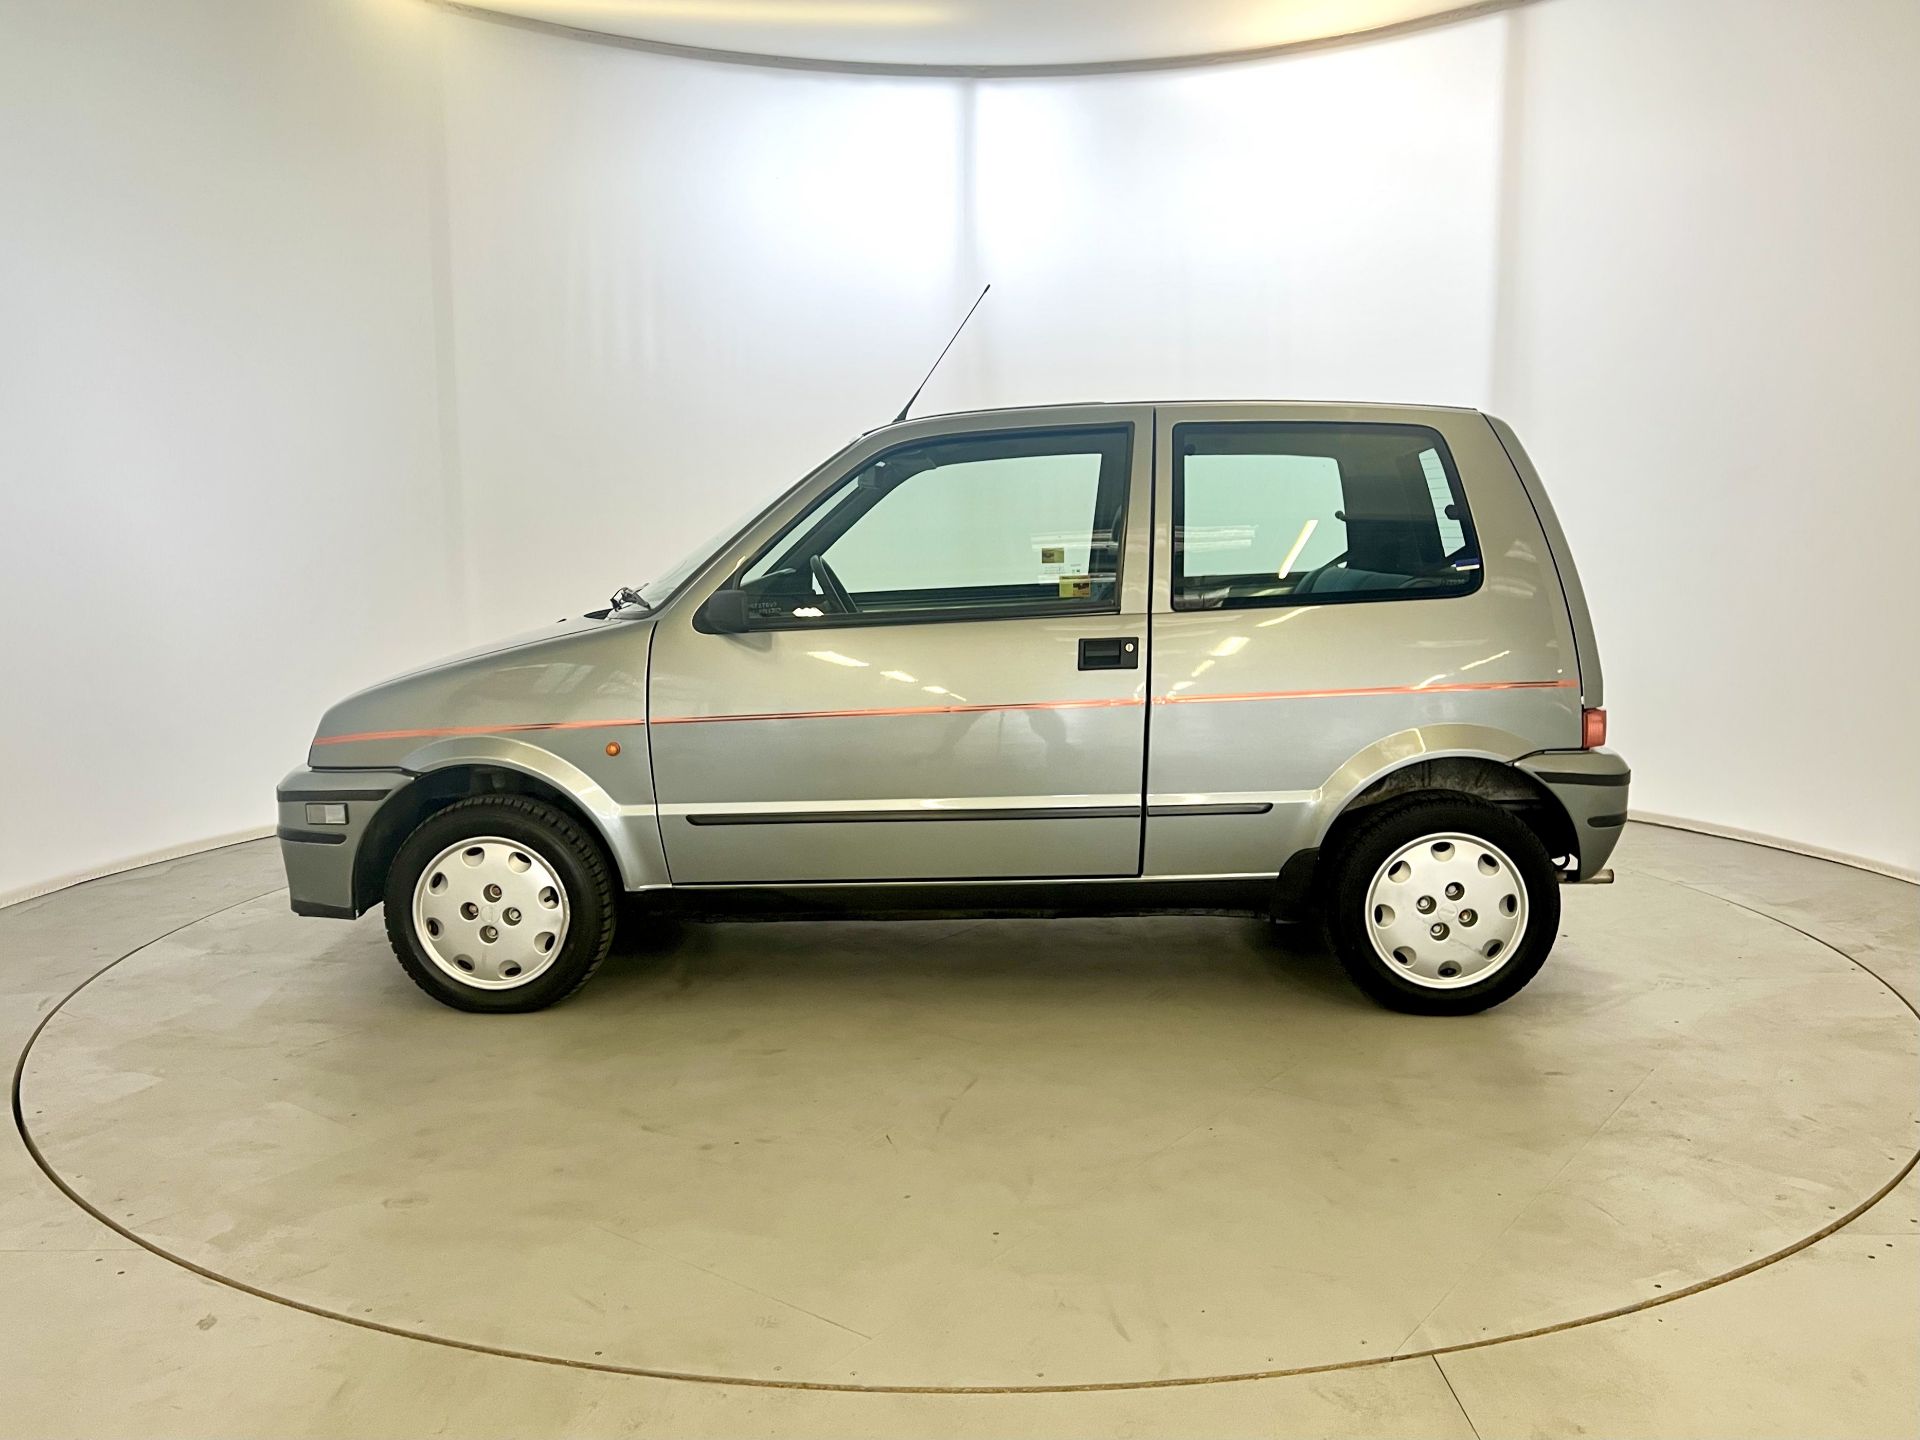 Fiat Cinquecento - Image 5 of 28